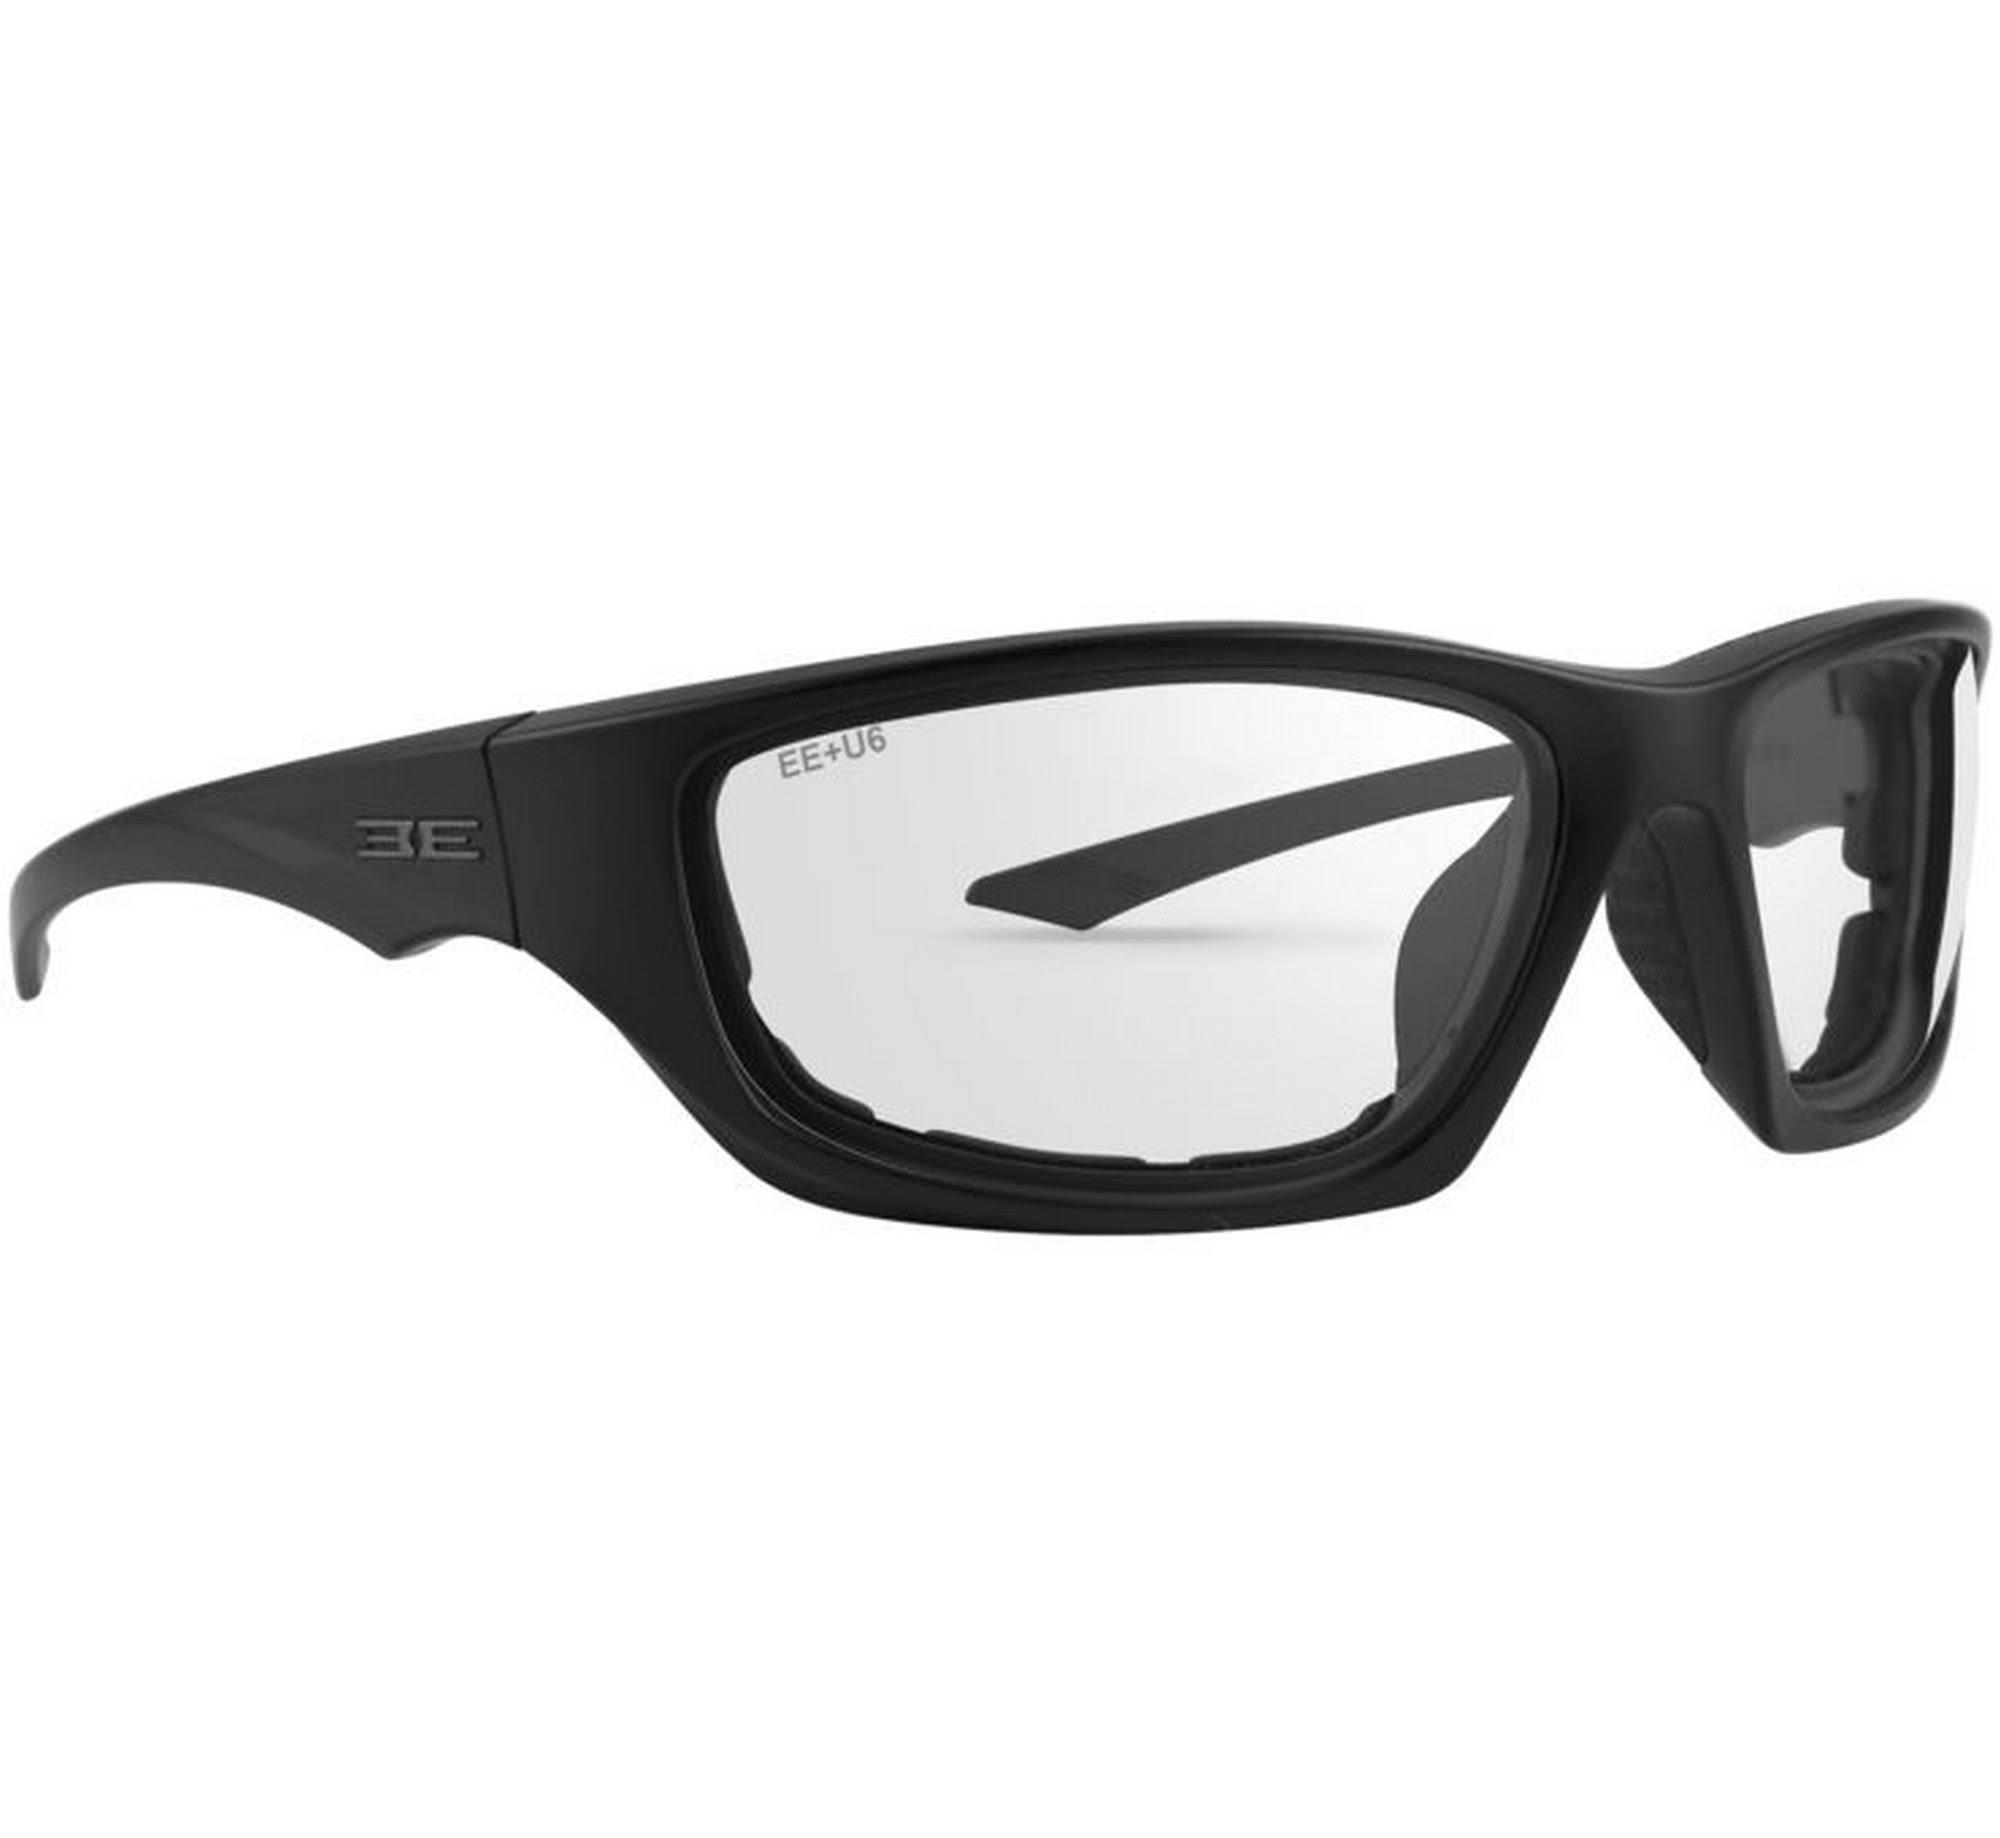 Epoch Eyewear Foam 3 Sunglasses Black - Clear